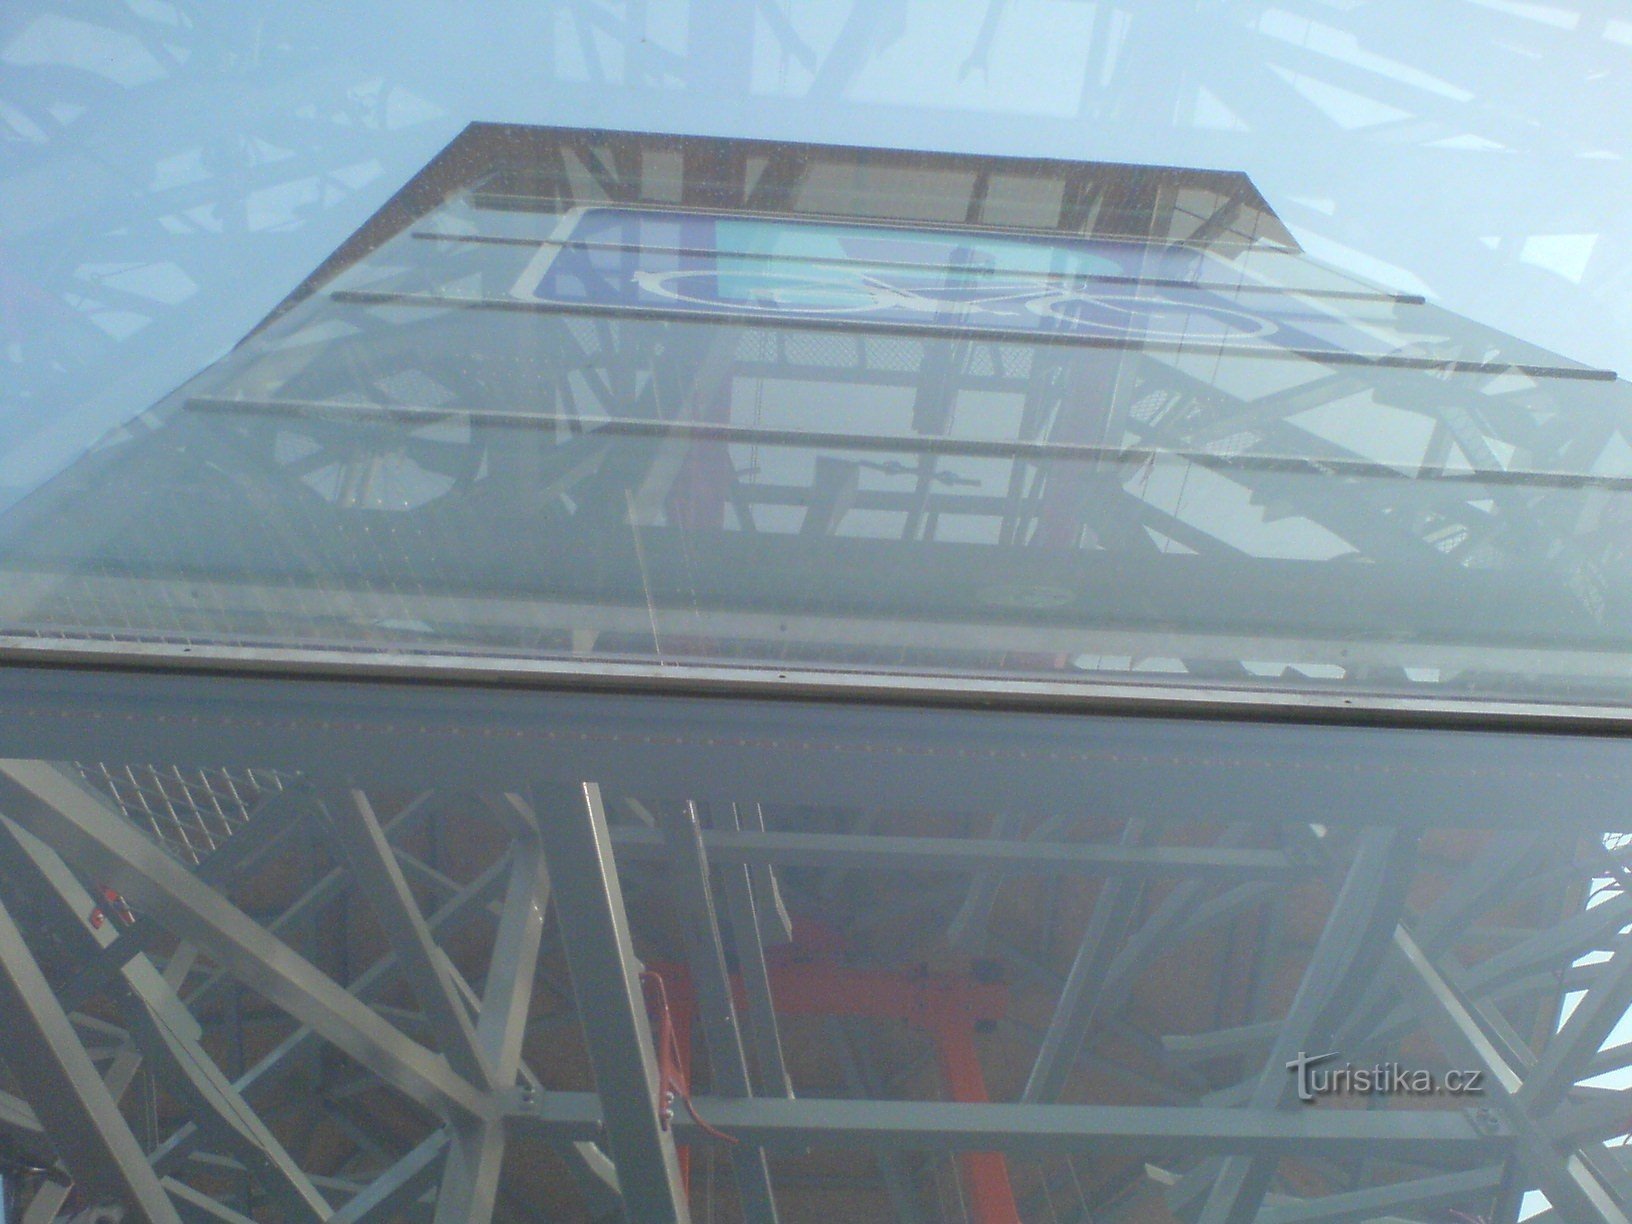 Näkymä parkkihallin rakenteeseen lasin läpi